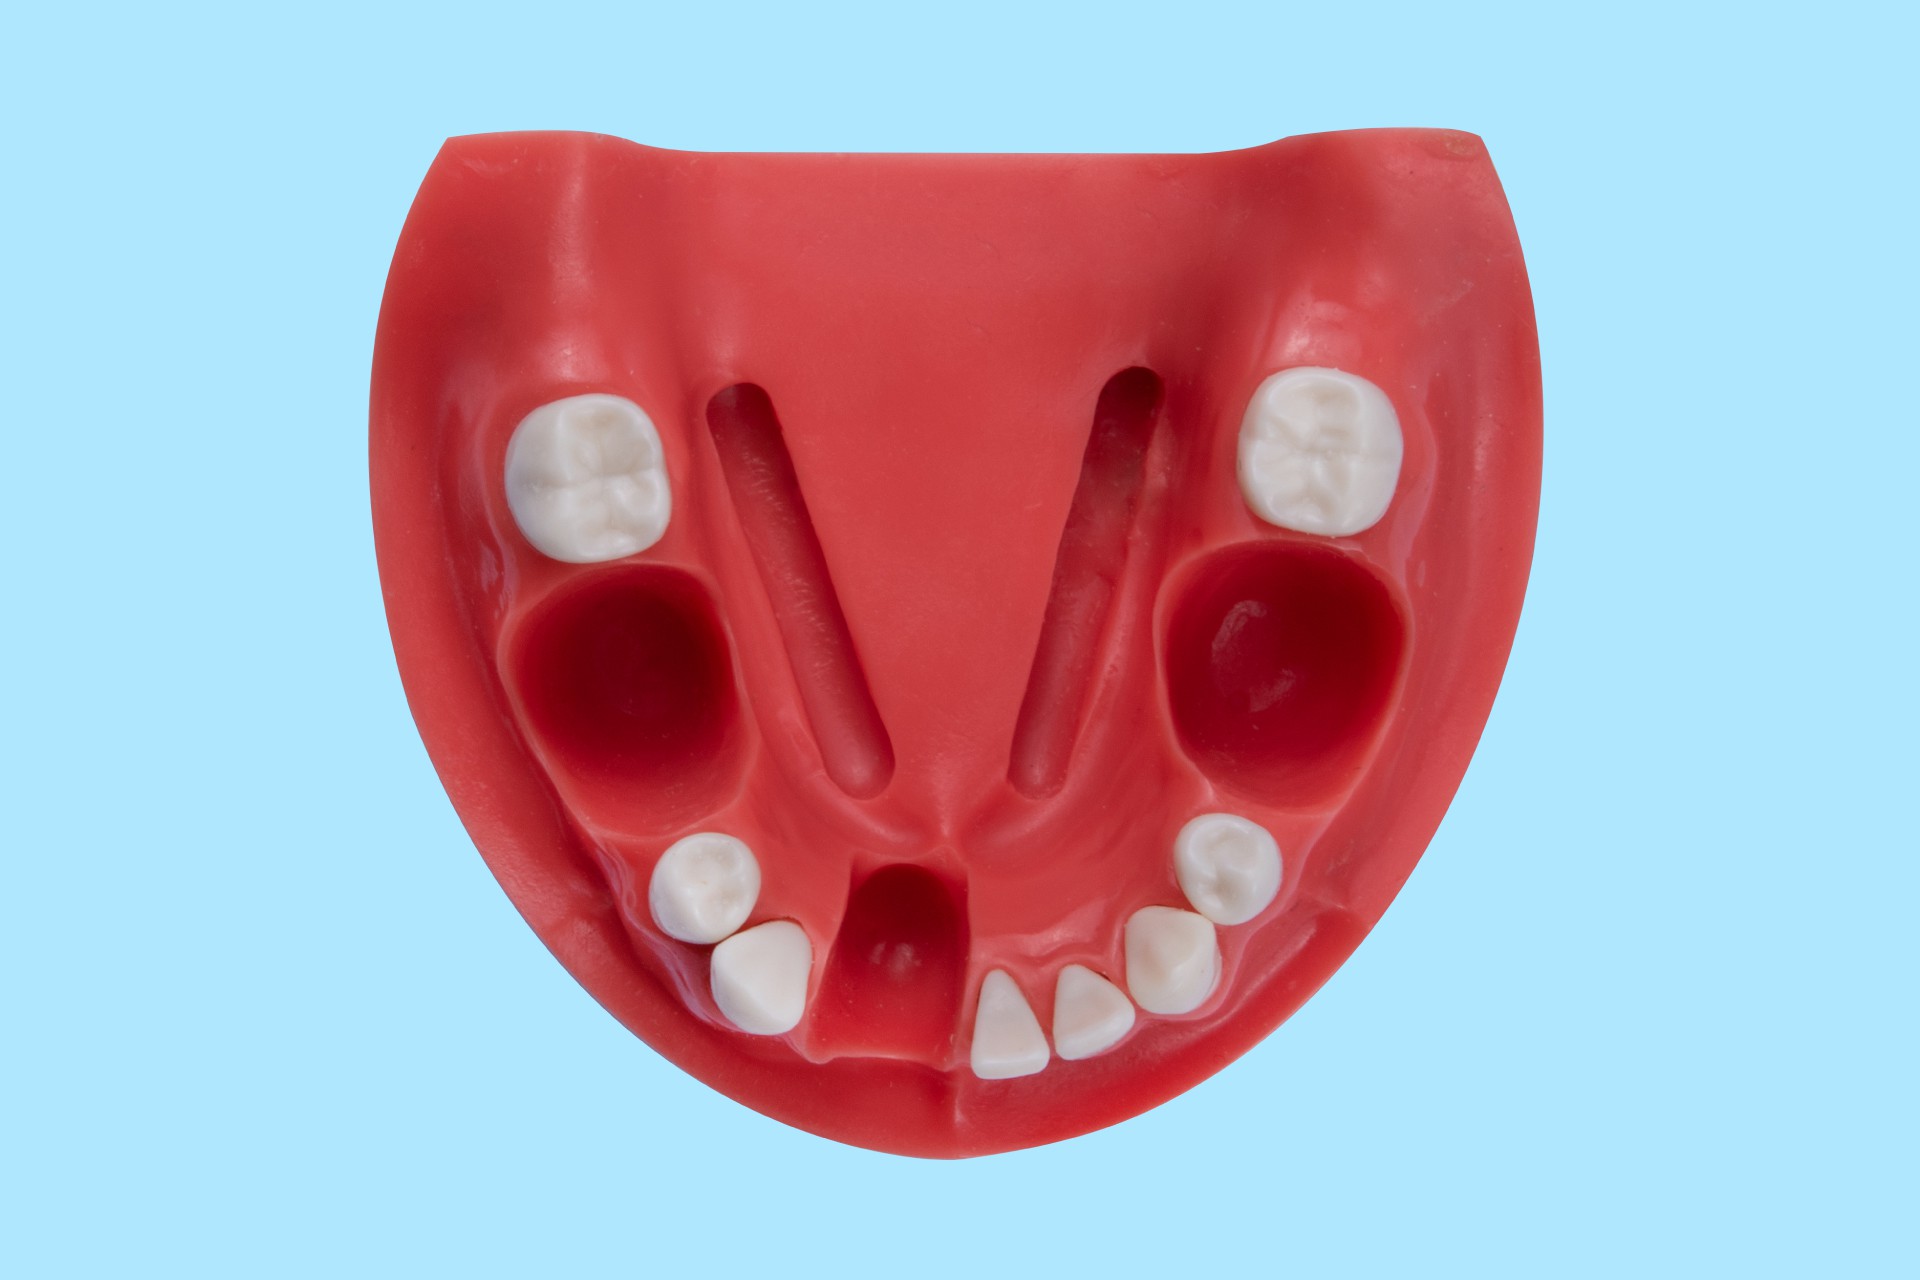 مدل فک جهت عکس برداری از دندان